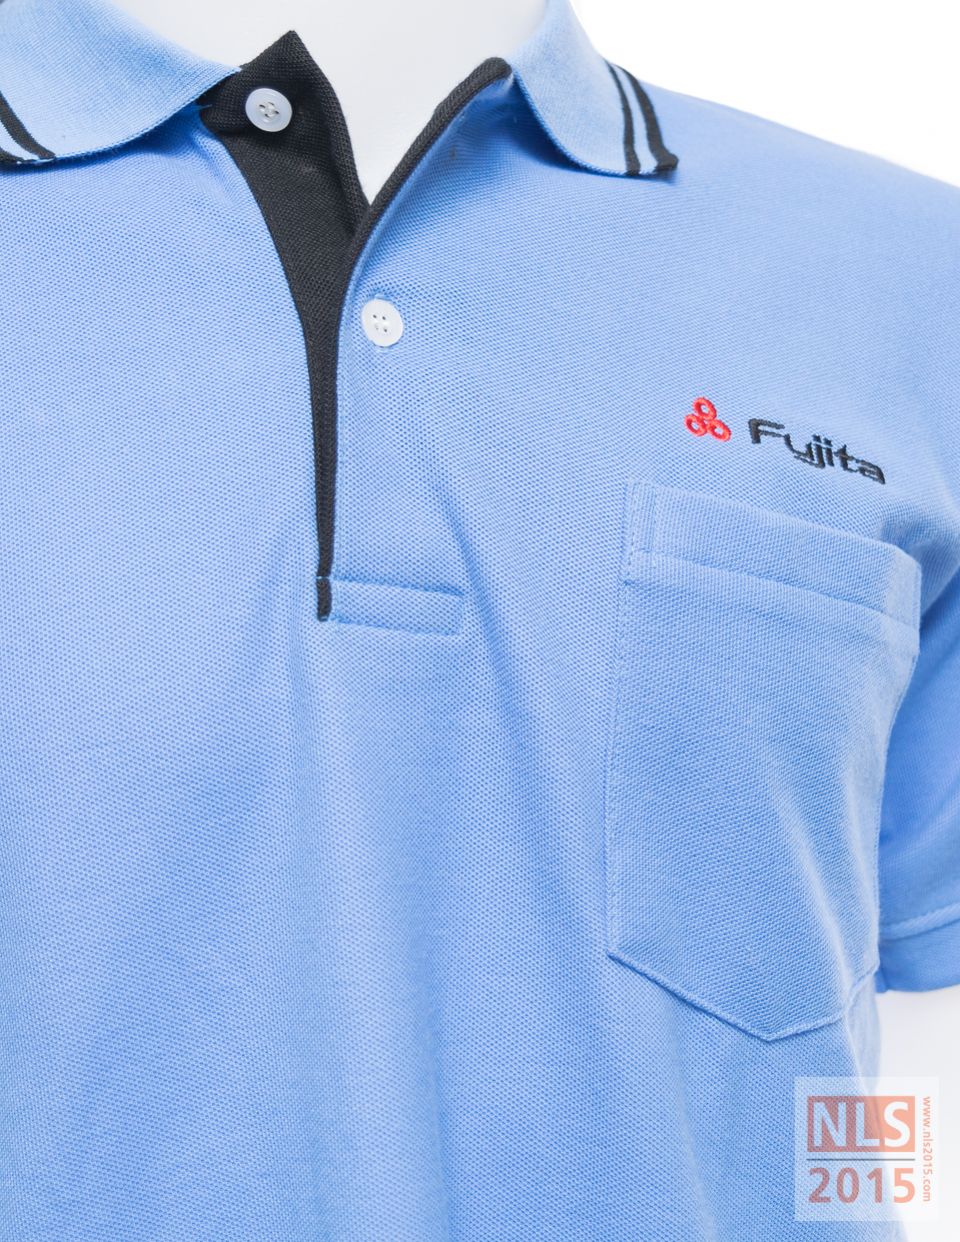 แบบฟอร์มพนักงานเสื้อโปโล Fujita / นลินสิริรับตัดชุดฟอร์มพนักงาน เสื้อโปโล พร้อมปักโลโก้รูปที่ 